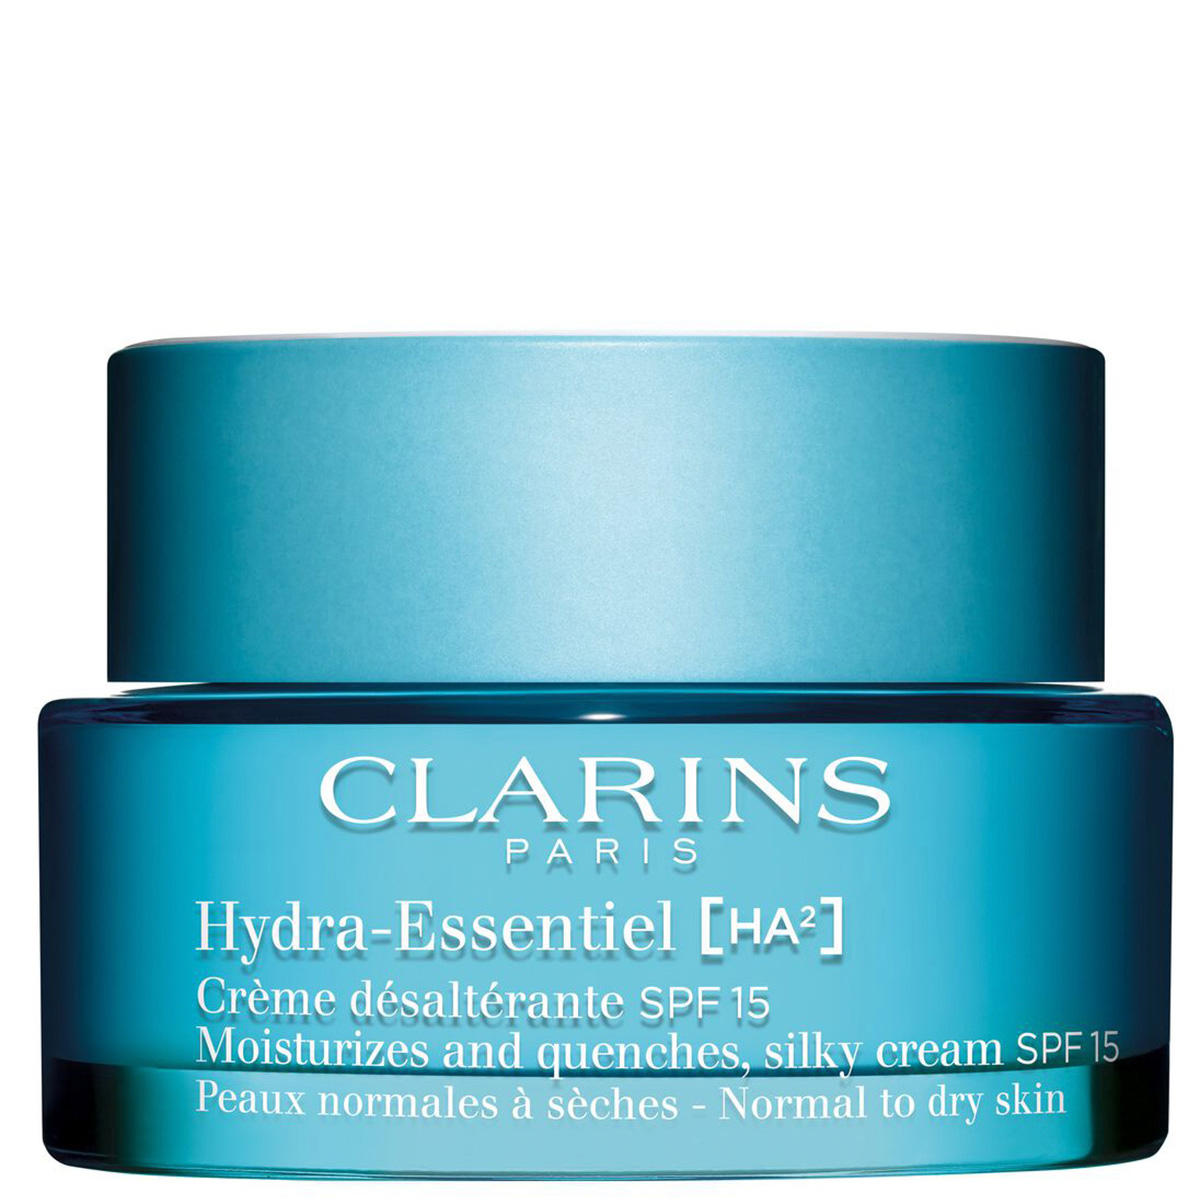 CLARINS Hydra-Essentiel Crème désaltérante SPF 15 - Peaux normales à sèches SPF 15 50 ml - 1